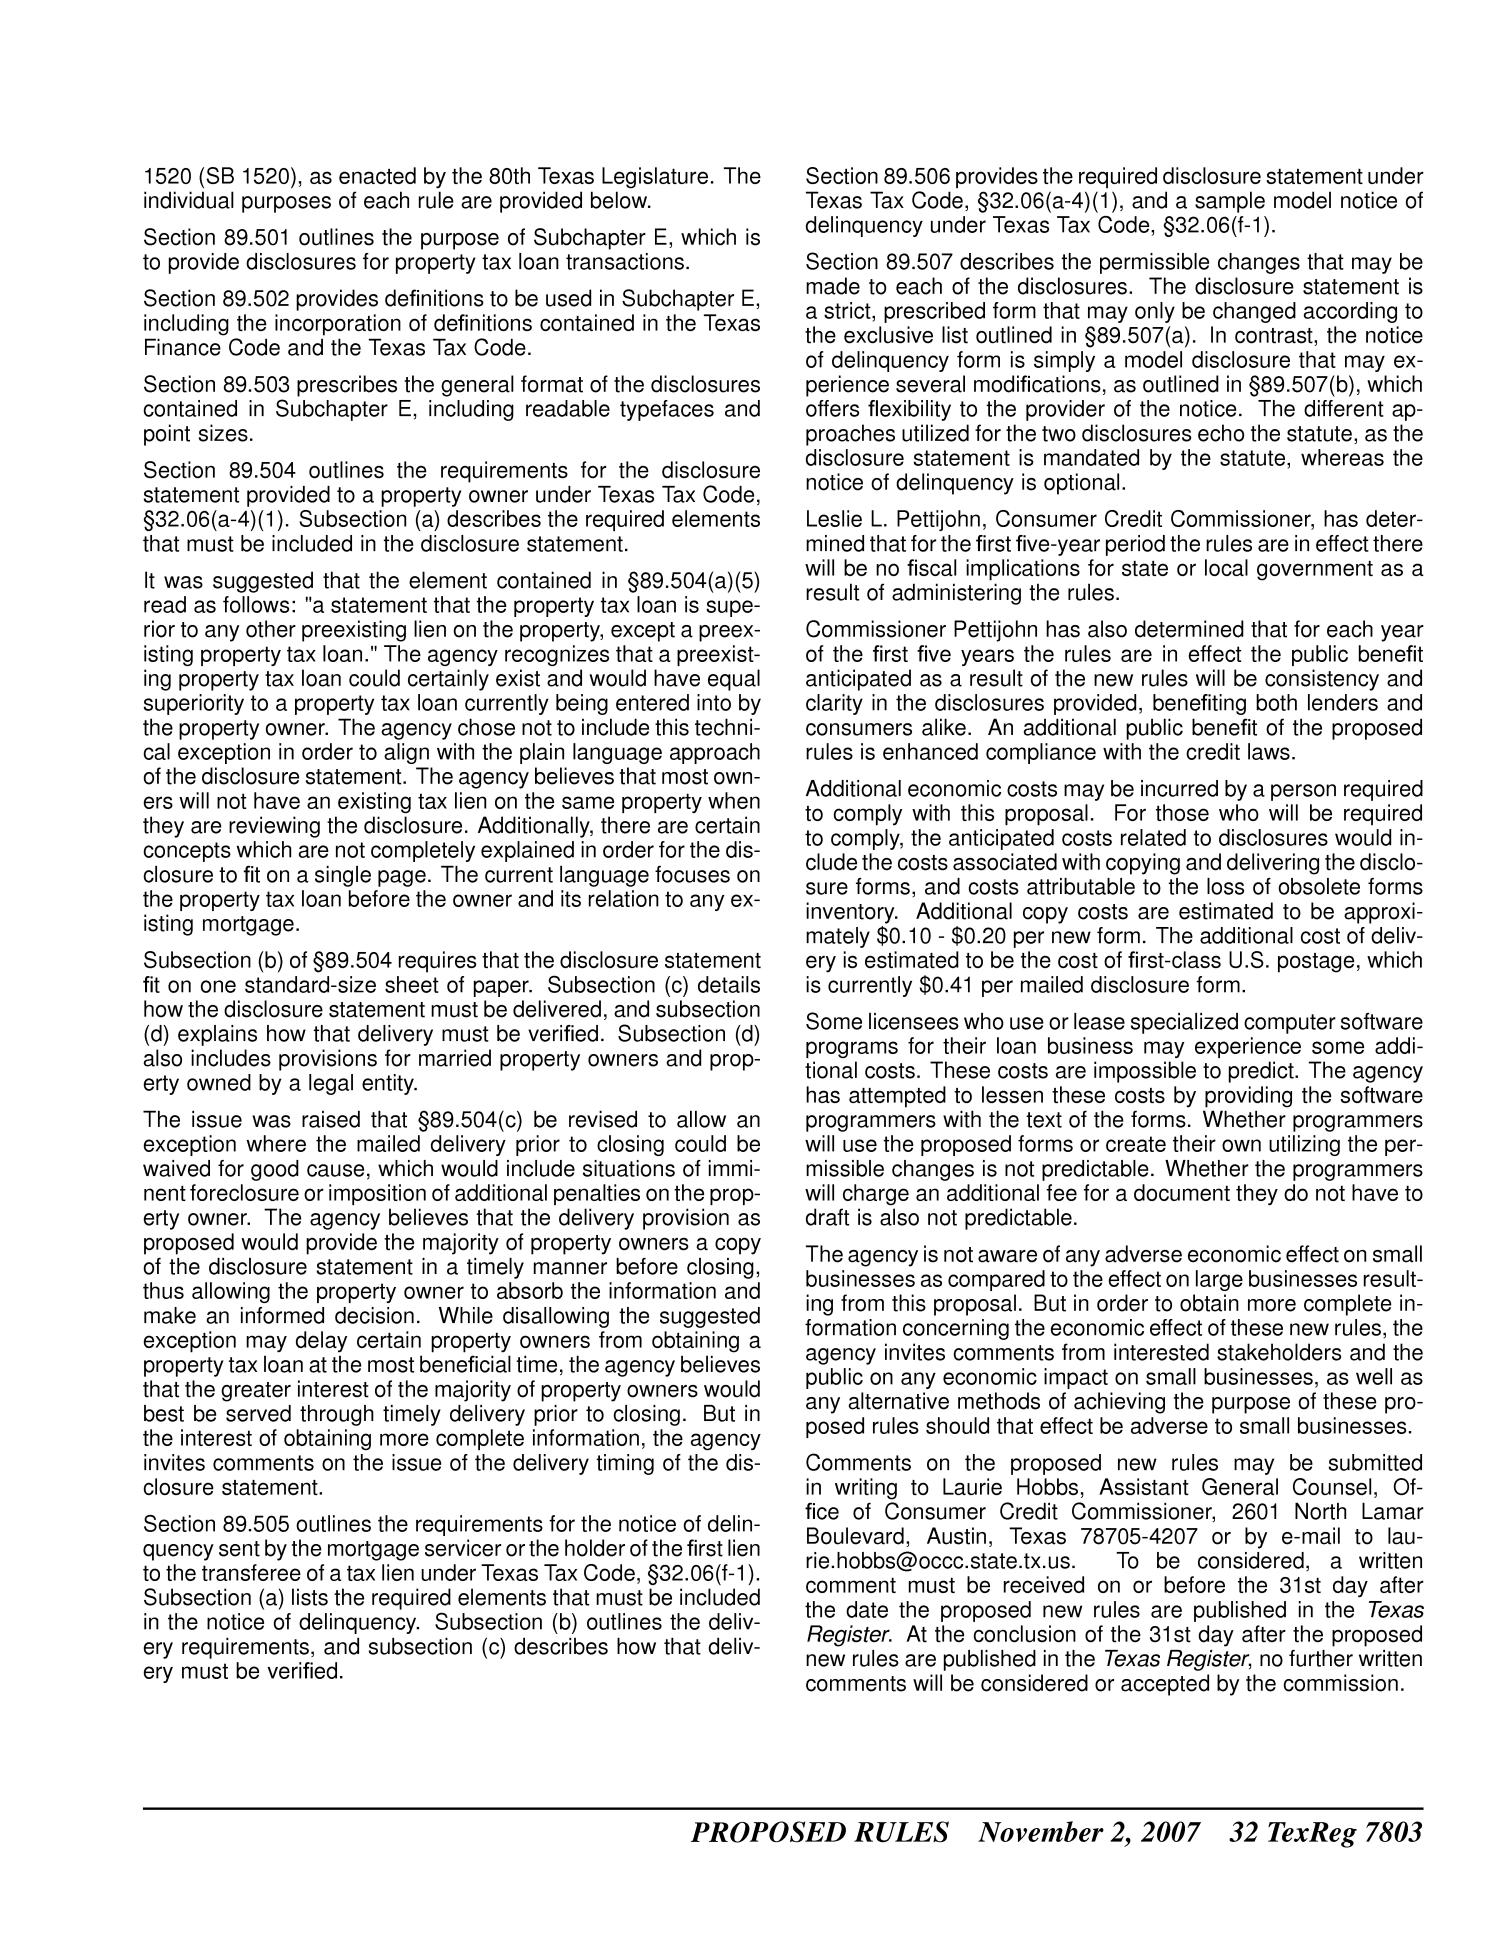 Texas Register, Volume 32, Number 44, Pages 7777-8060, November 2, 2007
                                                
                                                    7803
                                                